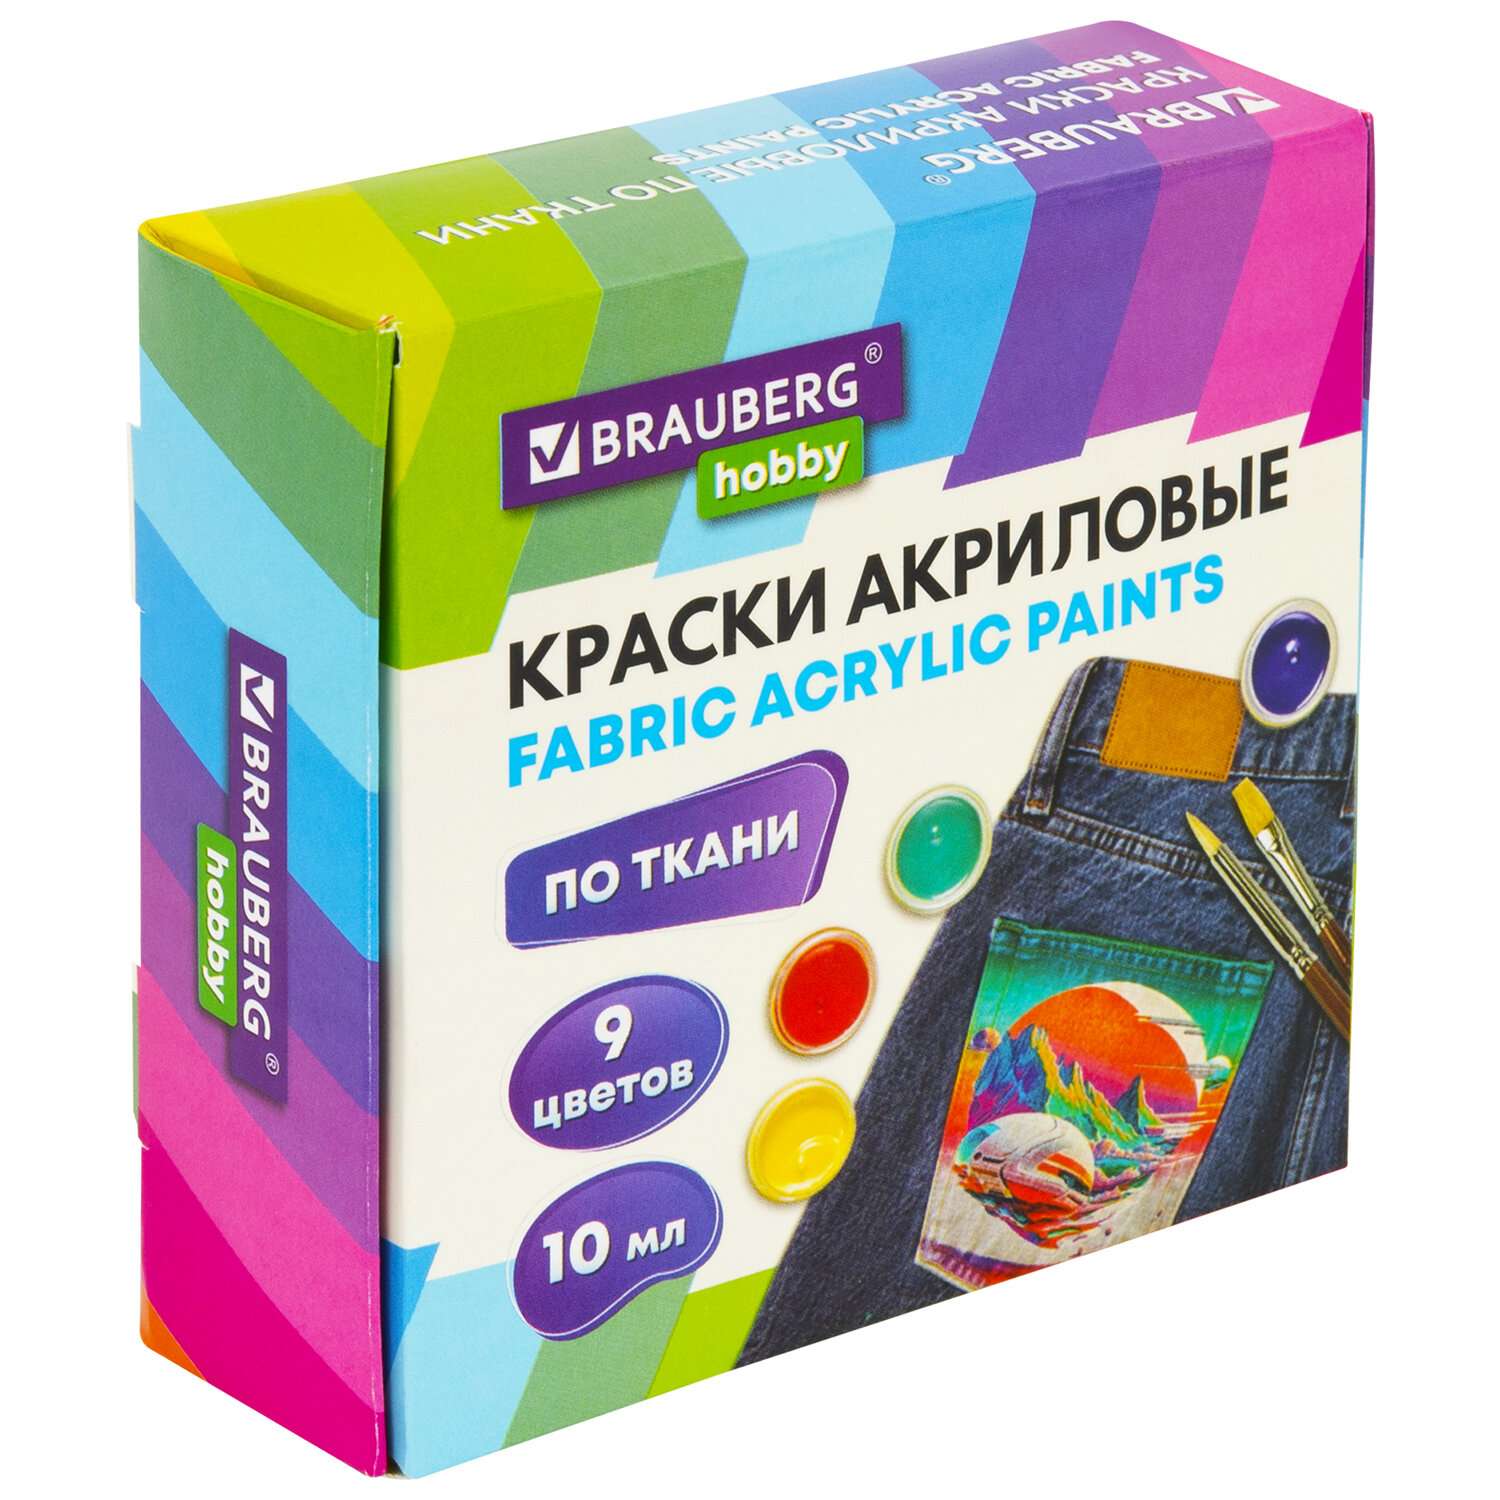 Акриловые краски Brauberg для ткани набор художественные 9 цветов - фото 3